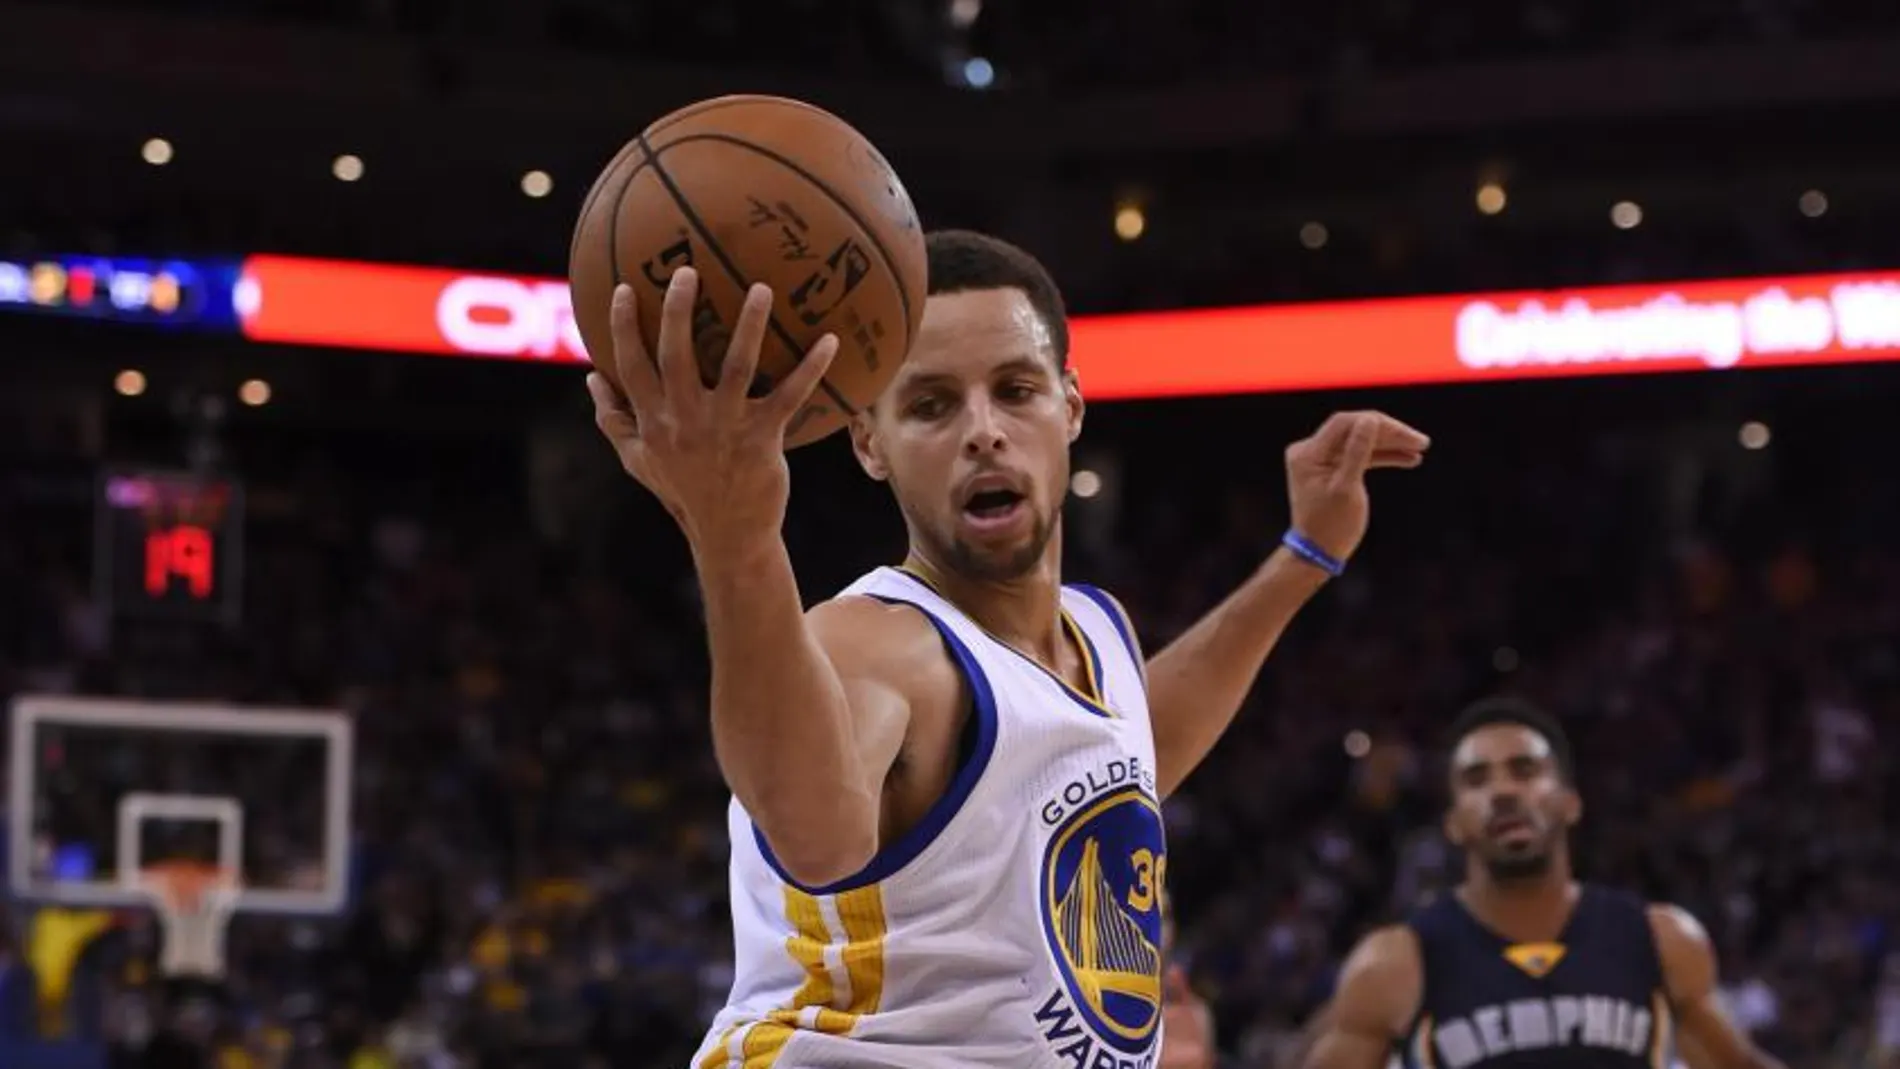 El jugadore de los Warriors Stephen Curry en acción durante el partido de la NBA que enfrentó a su equipo contra los Grizzlies.